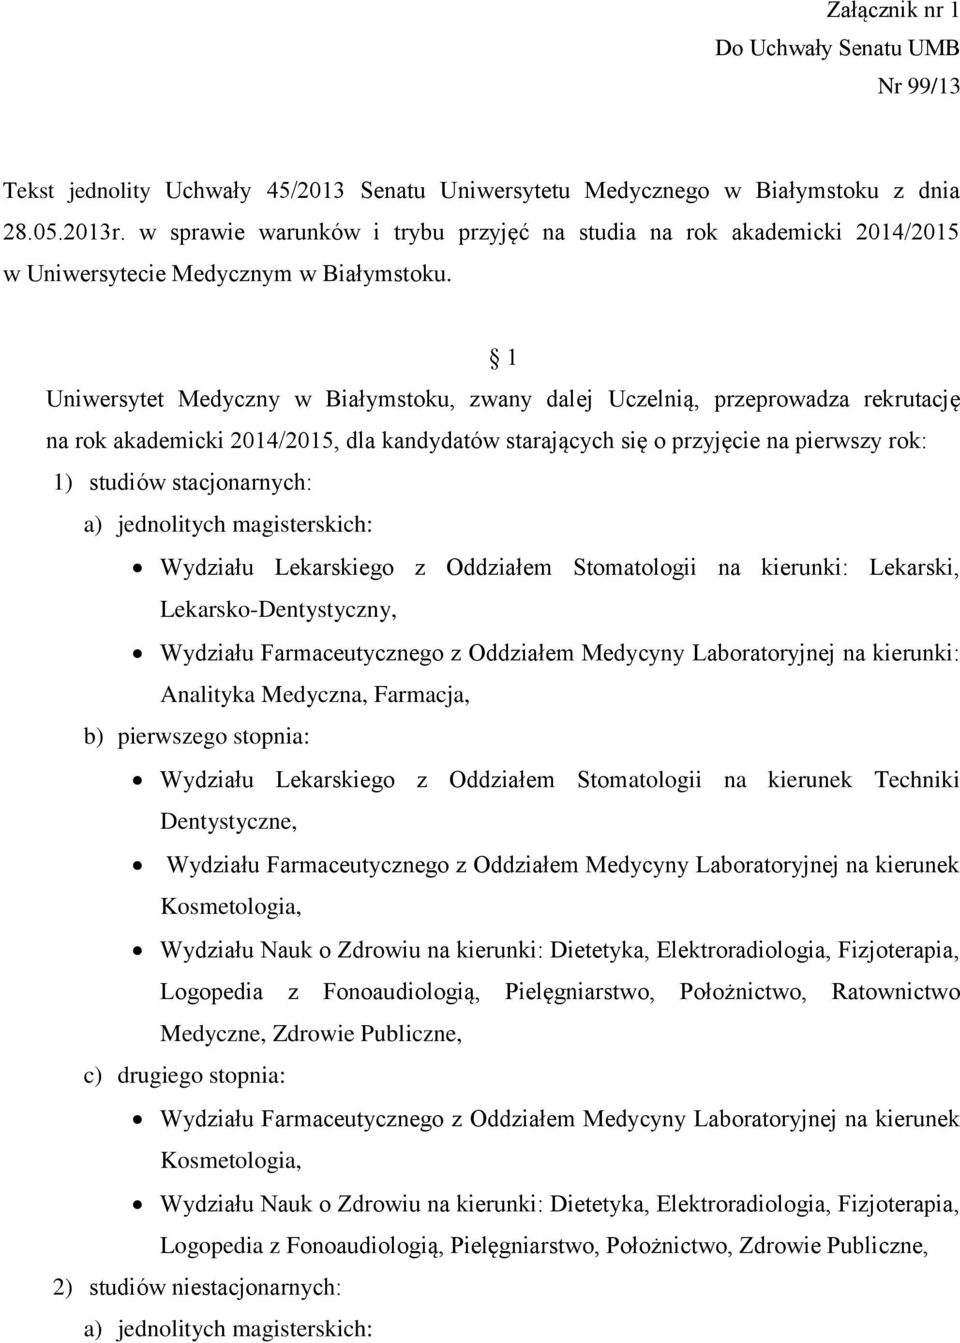 1 Uniwersytet Medyczny w Białymstoku, zwany dalej Uczelnią, przeprowadza rekrutację na rok akademicki 2014/2015, dla kandydatów starających się o przyjęcie na pierwszy rok: 1) studiów stacjonarnych: